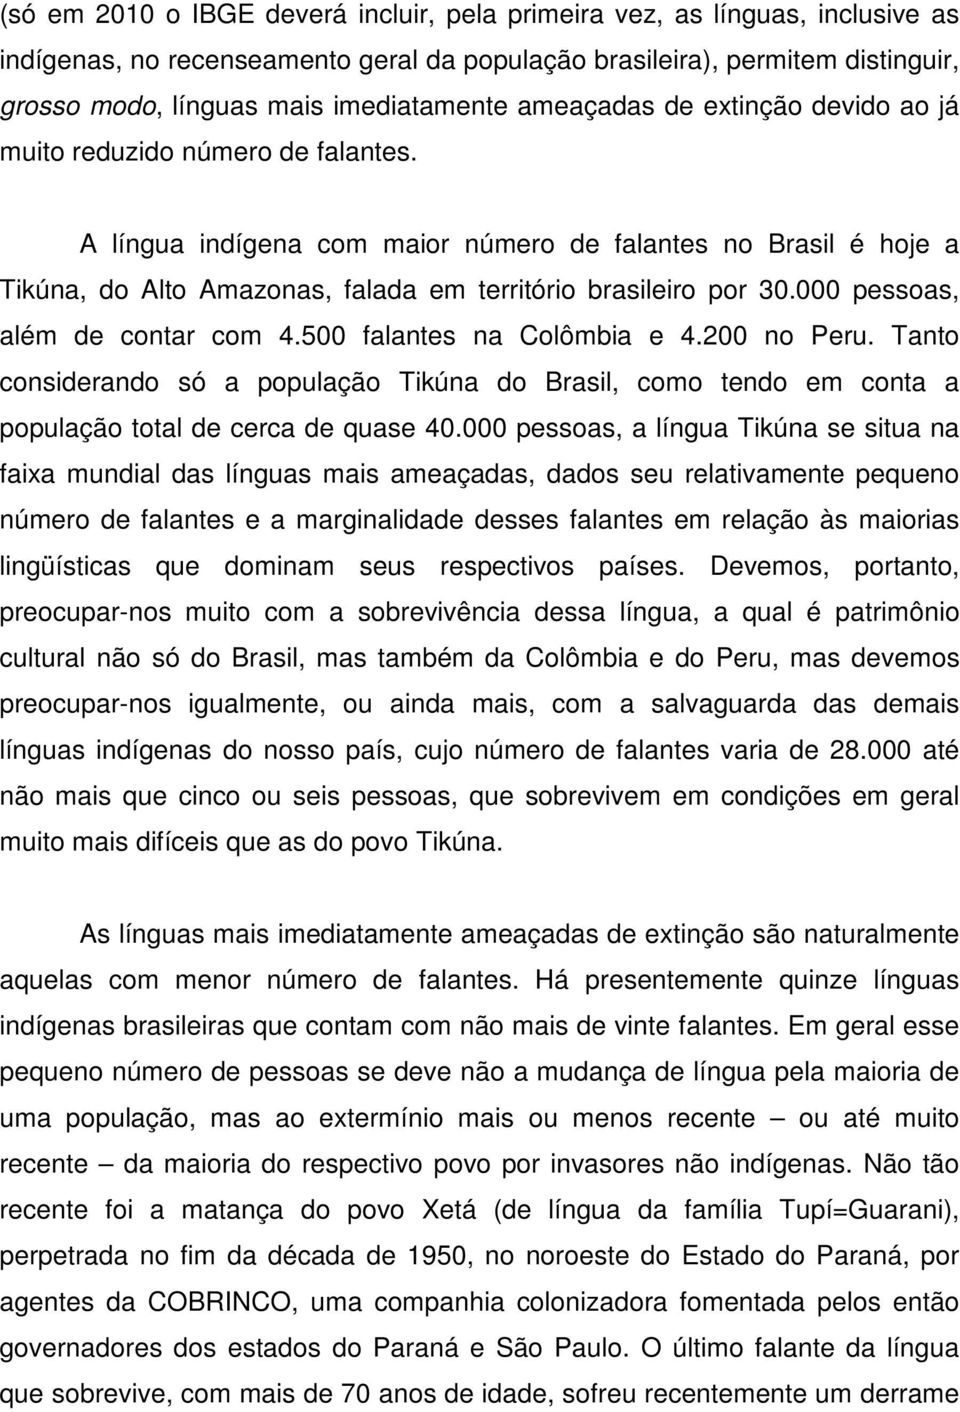 A língua indígena com maior número de falantes no Brasil é hoje a Tikúna, do Alto Amazonas, falada em território brasileiro por 30.000 pessoas, além de contar com 4.500 falantes na Colômbia e 4.